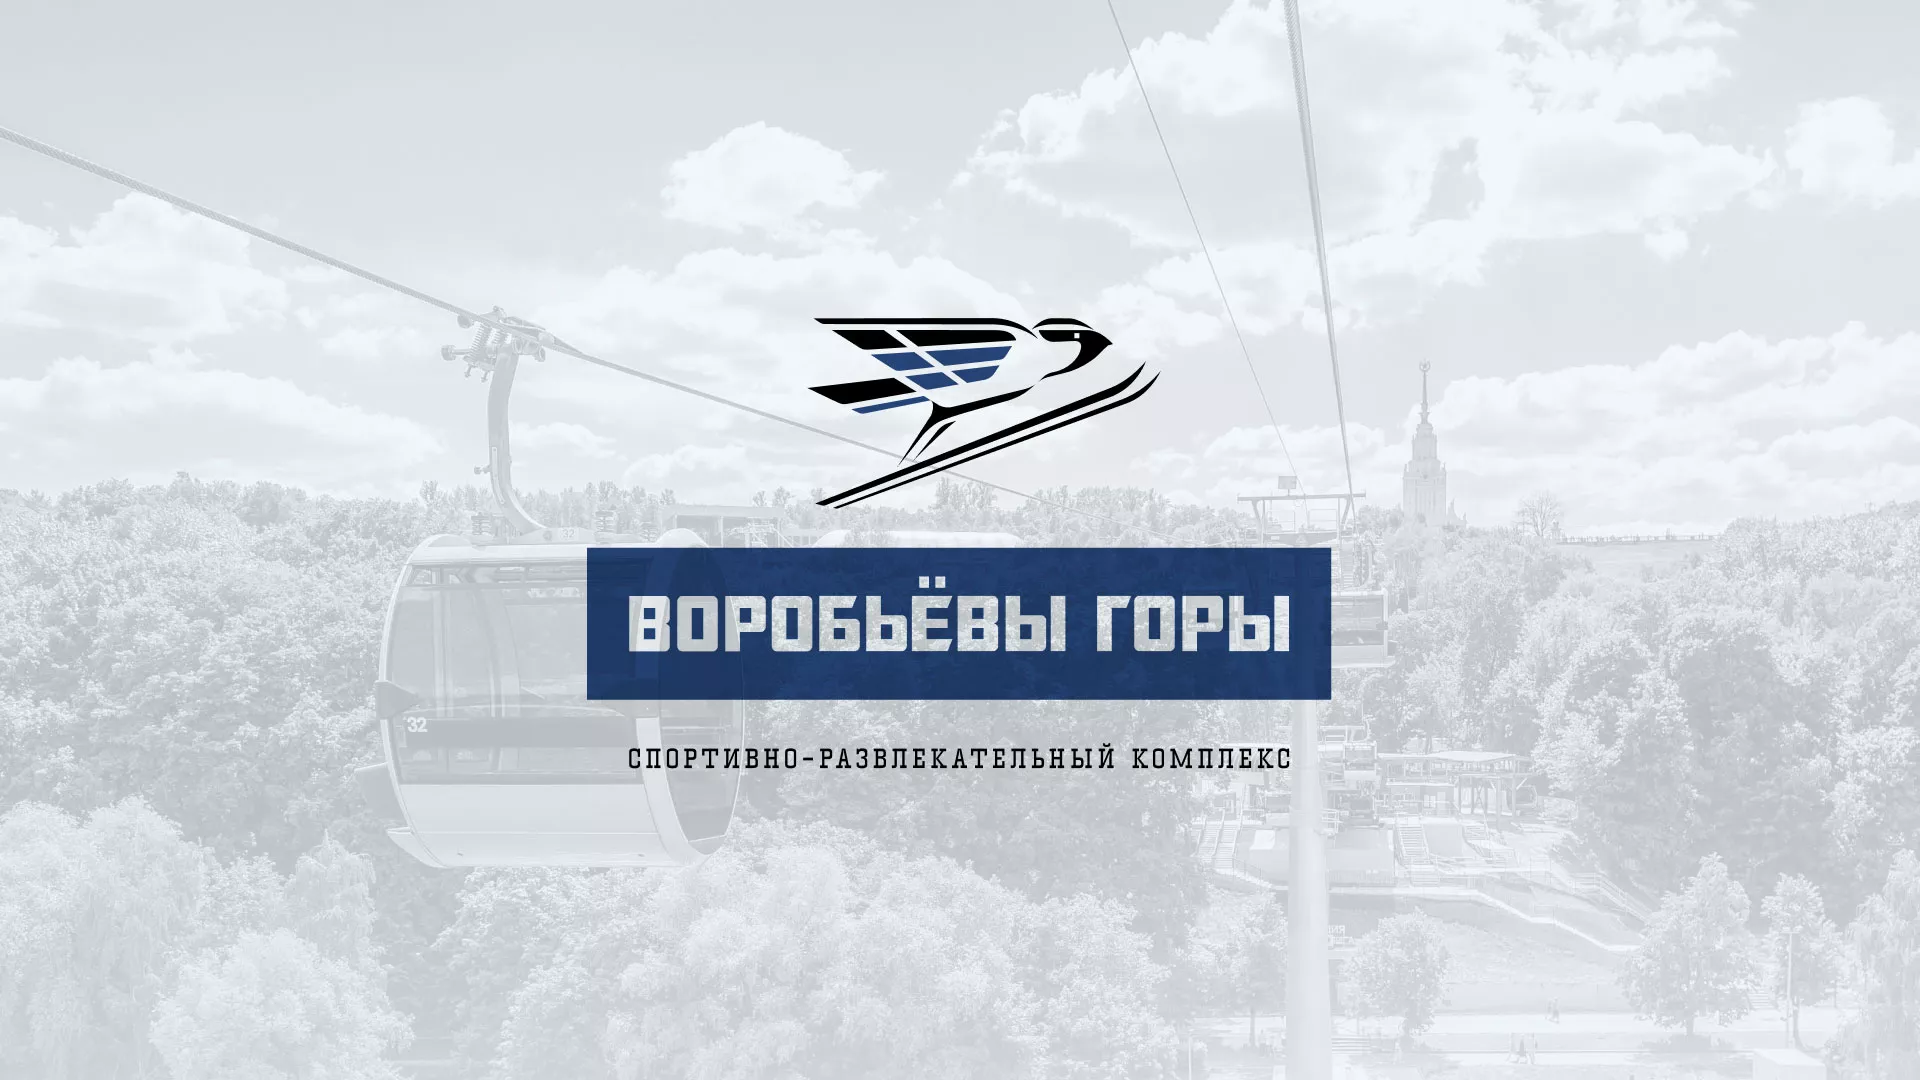 Разработка сайта в Верхнем Уфалее для спортивно-развлекательного комплекса «Воробьёвы горы»